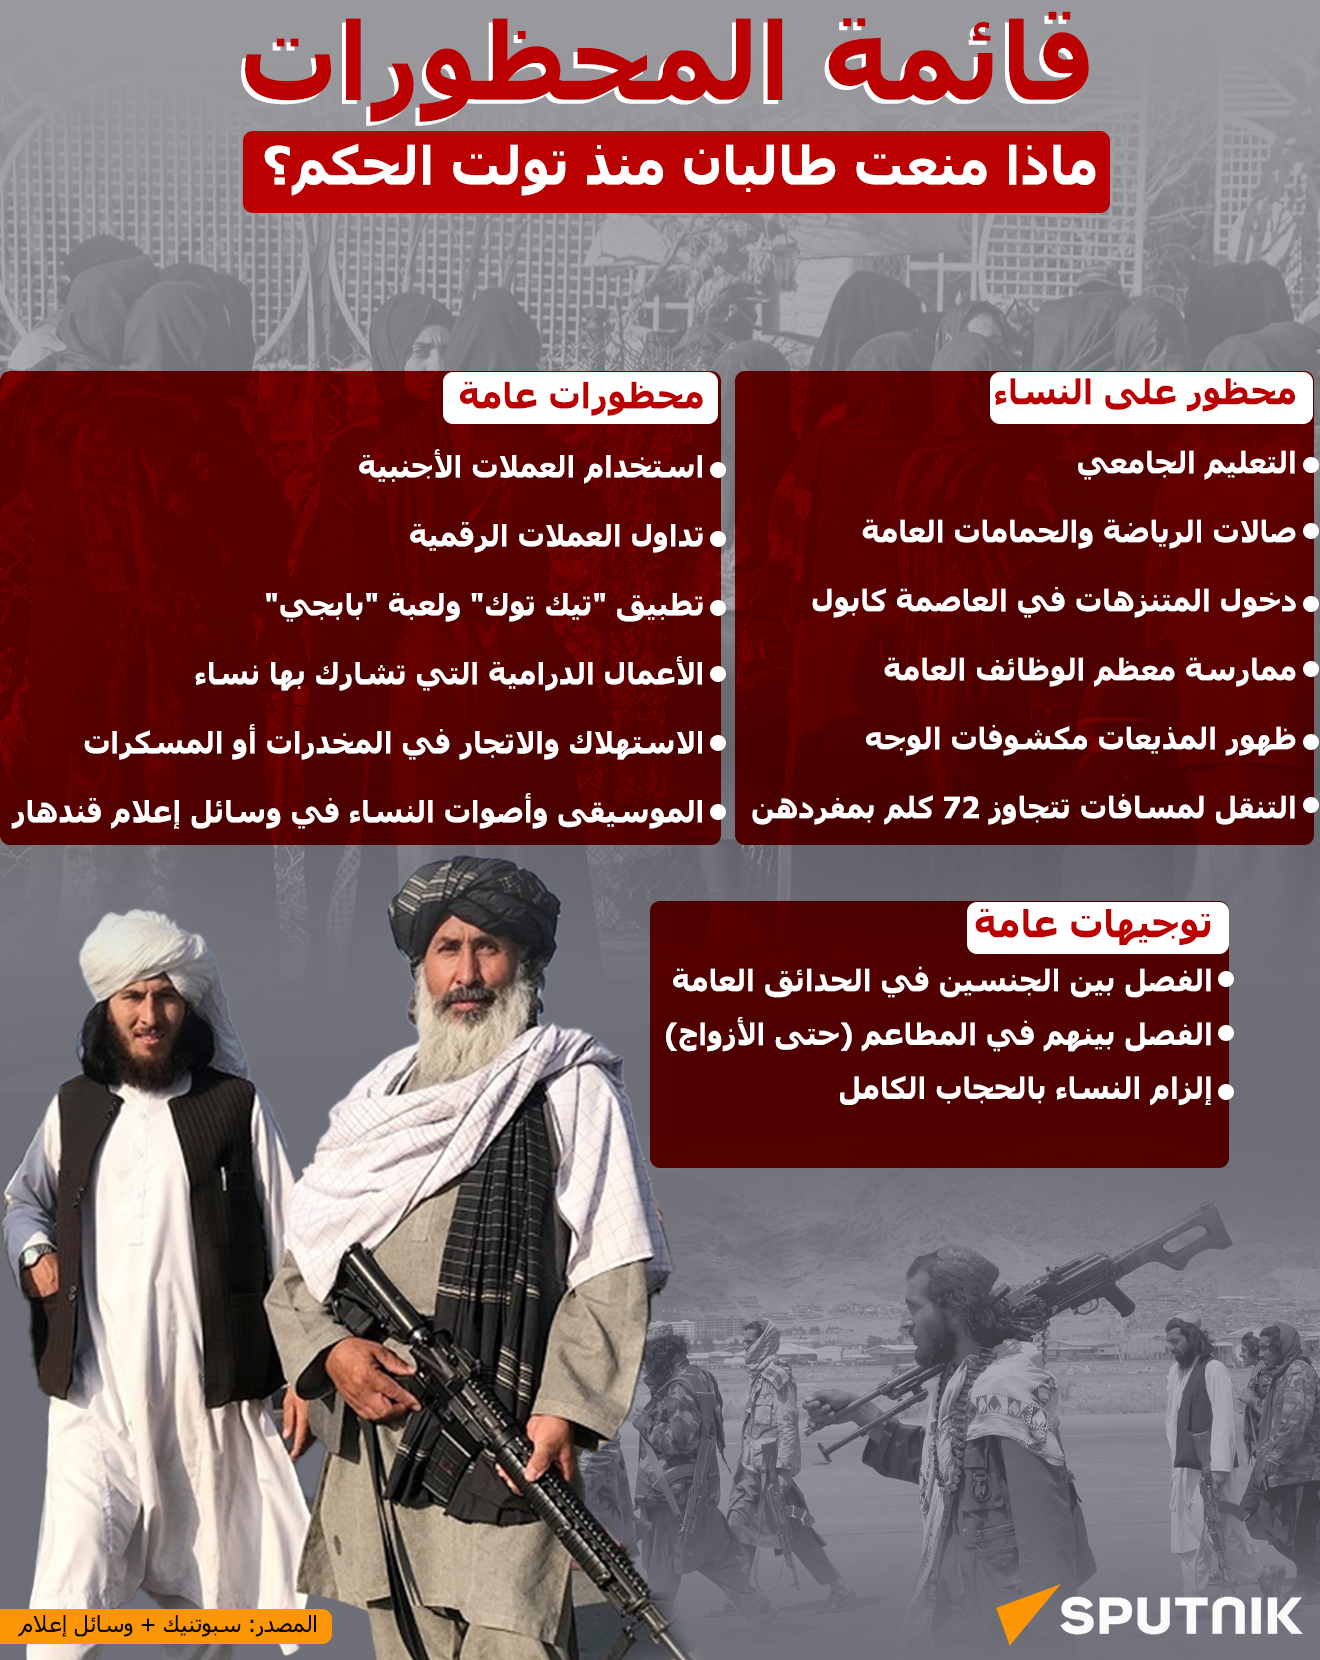  قائمة المحظورات التي اتخذتها طالبان منذ توليها الحكم - سبوتنيك عربي